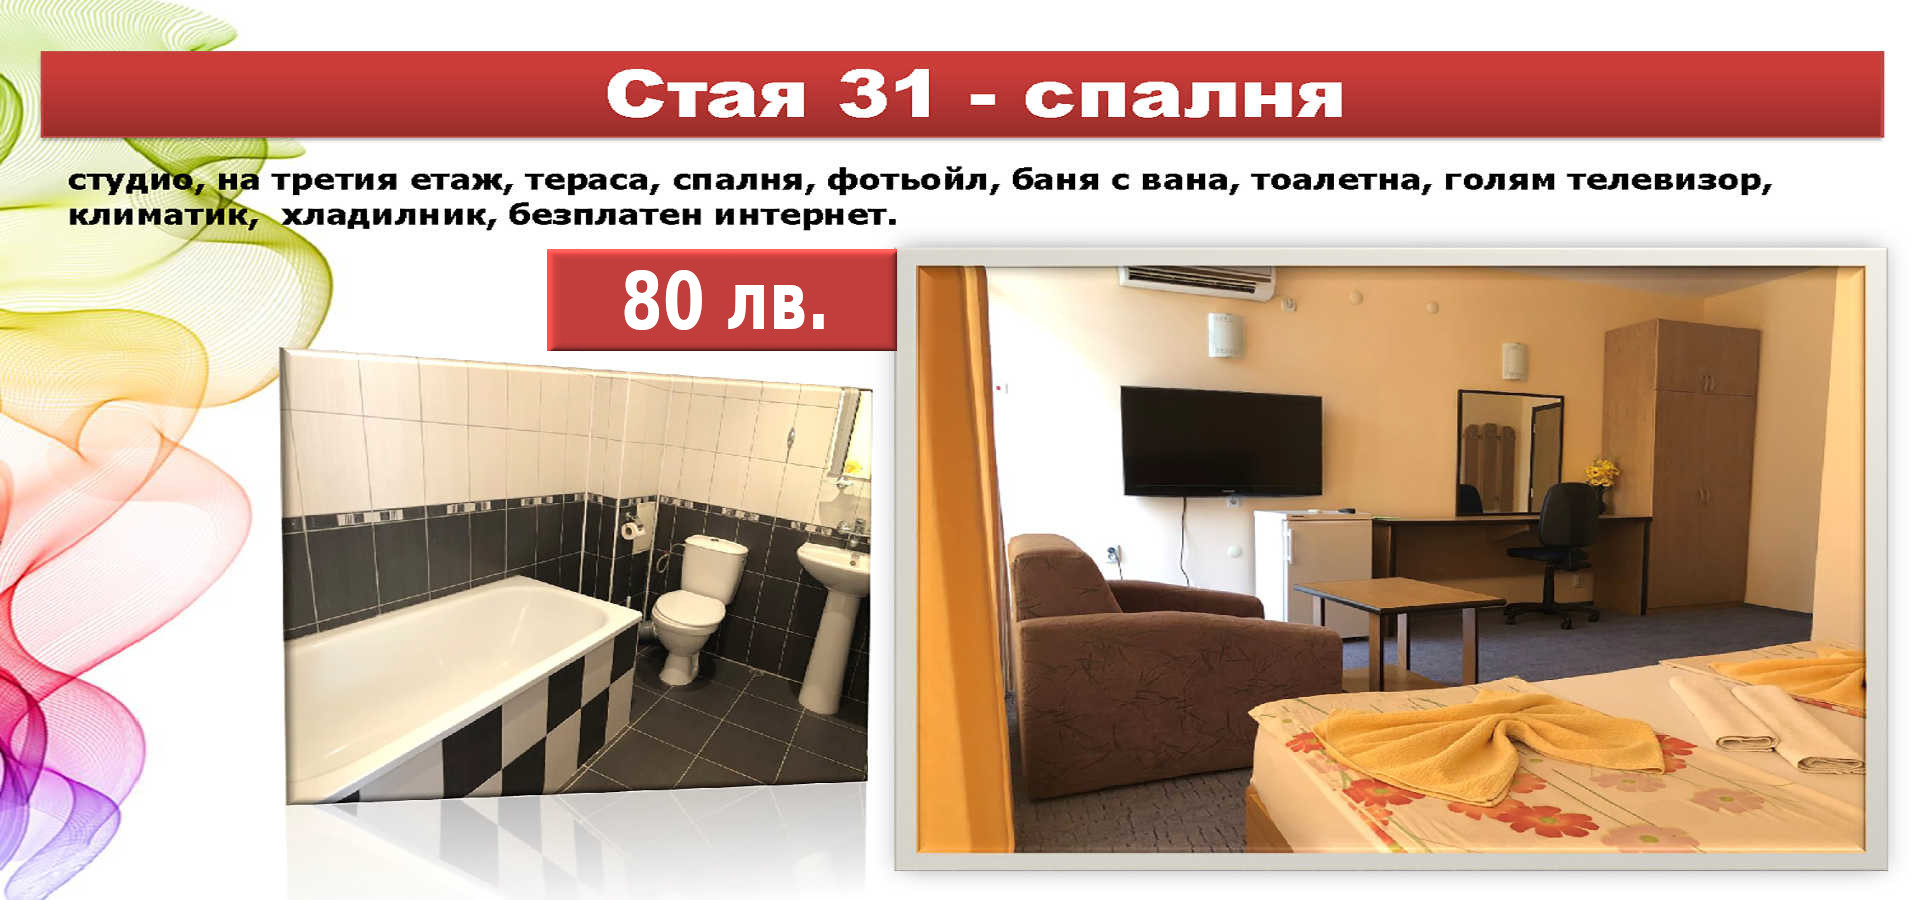 Стая 31 - спалня